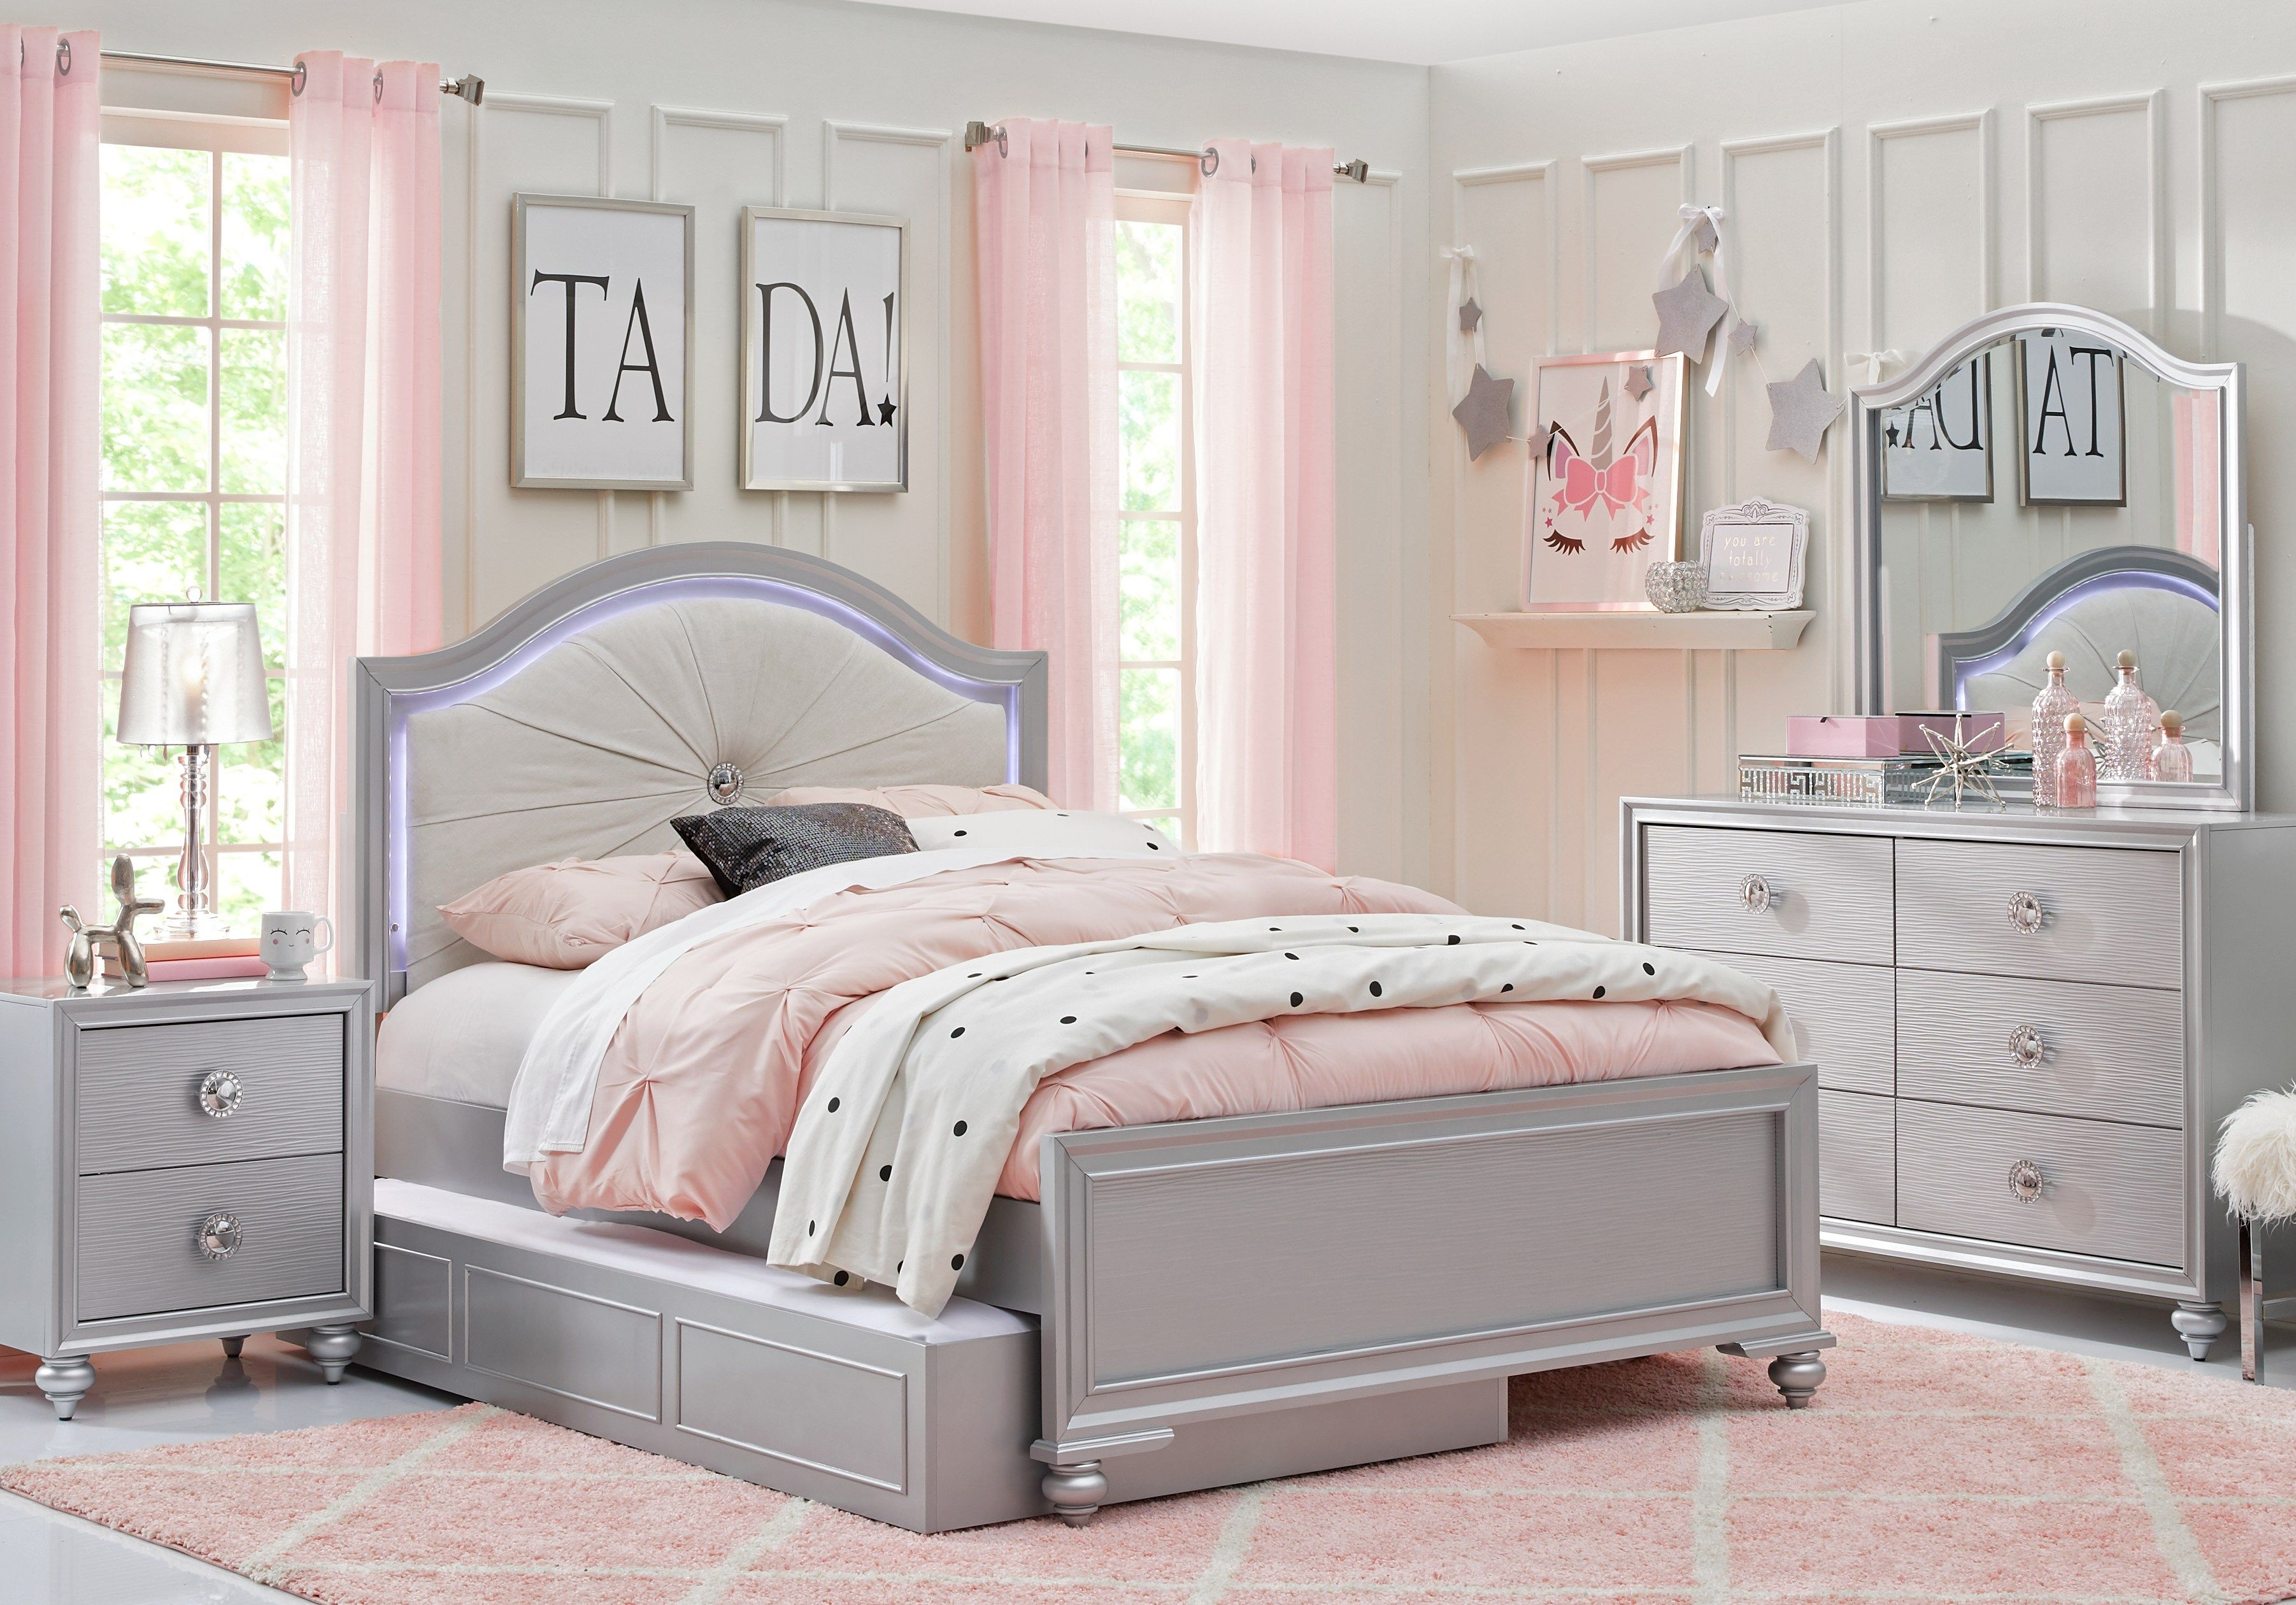 Evangeline Silver 4 Pc Full Panel Bedroom Room Inspiration Full inside dimensions 3605 X 2520